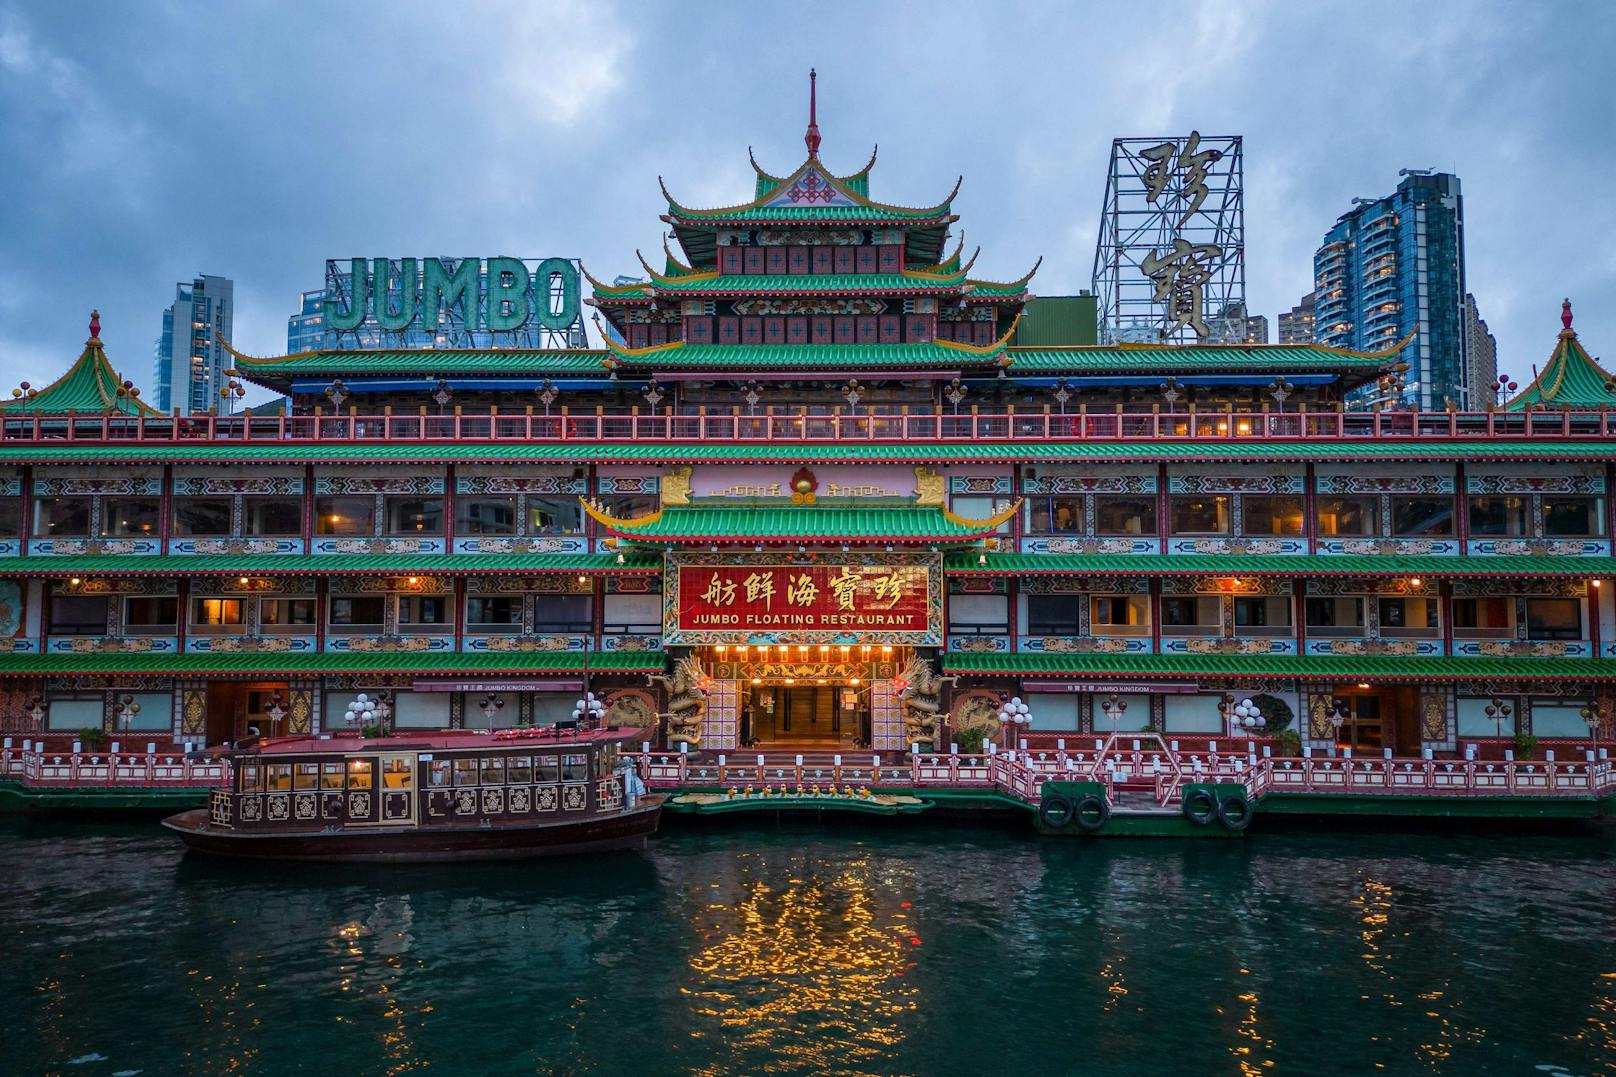 Mit einer länge von etwa 80 Metern und einer Personenkapazität für 2.000 Leute, wurde das schwimmende, dreistöckige Restaurant zu einer Touristenattraktion im Hafen vor Hongkong.